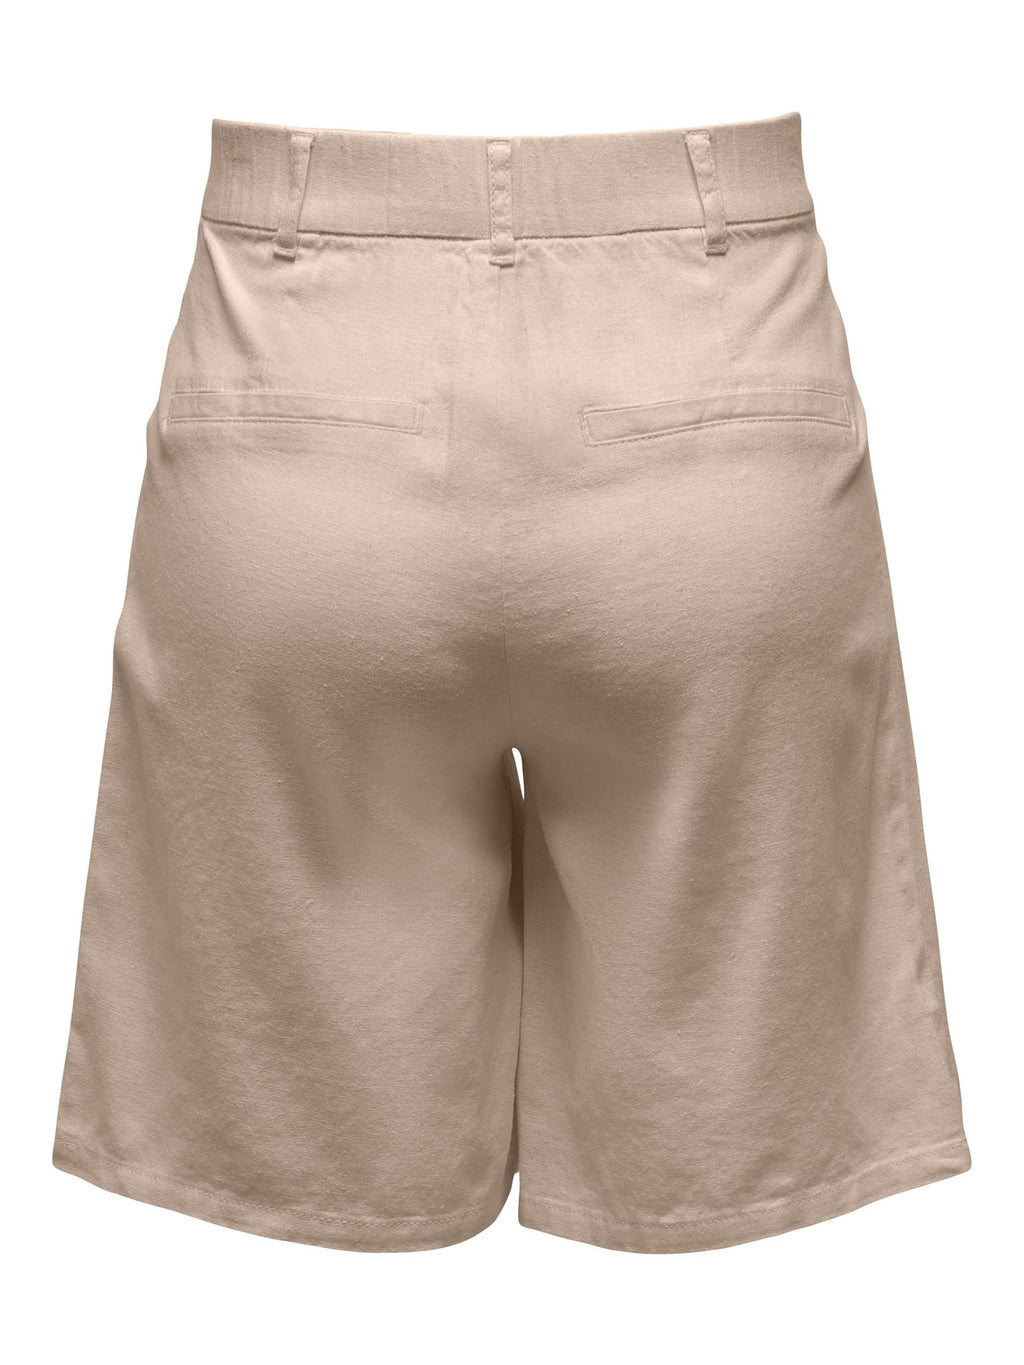 Caro High Waist Shorts - Oxford Tan